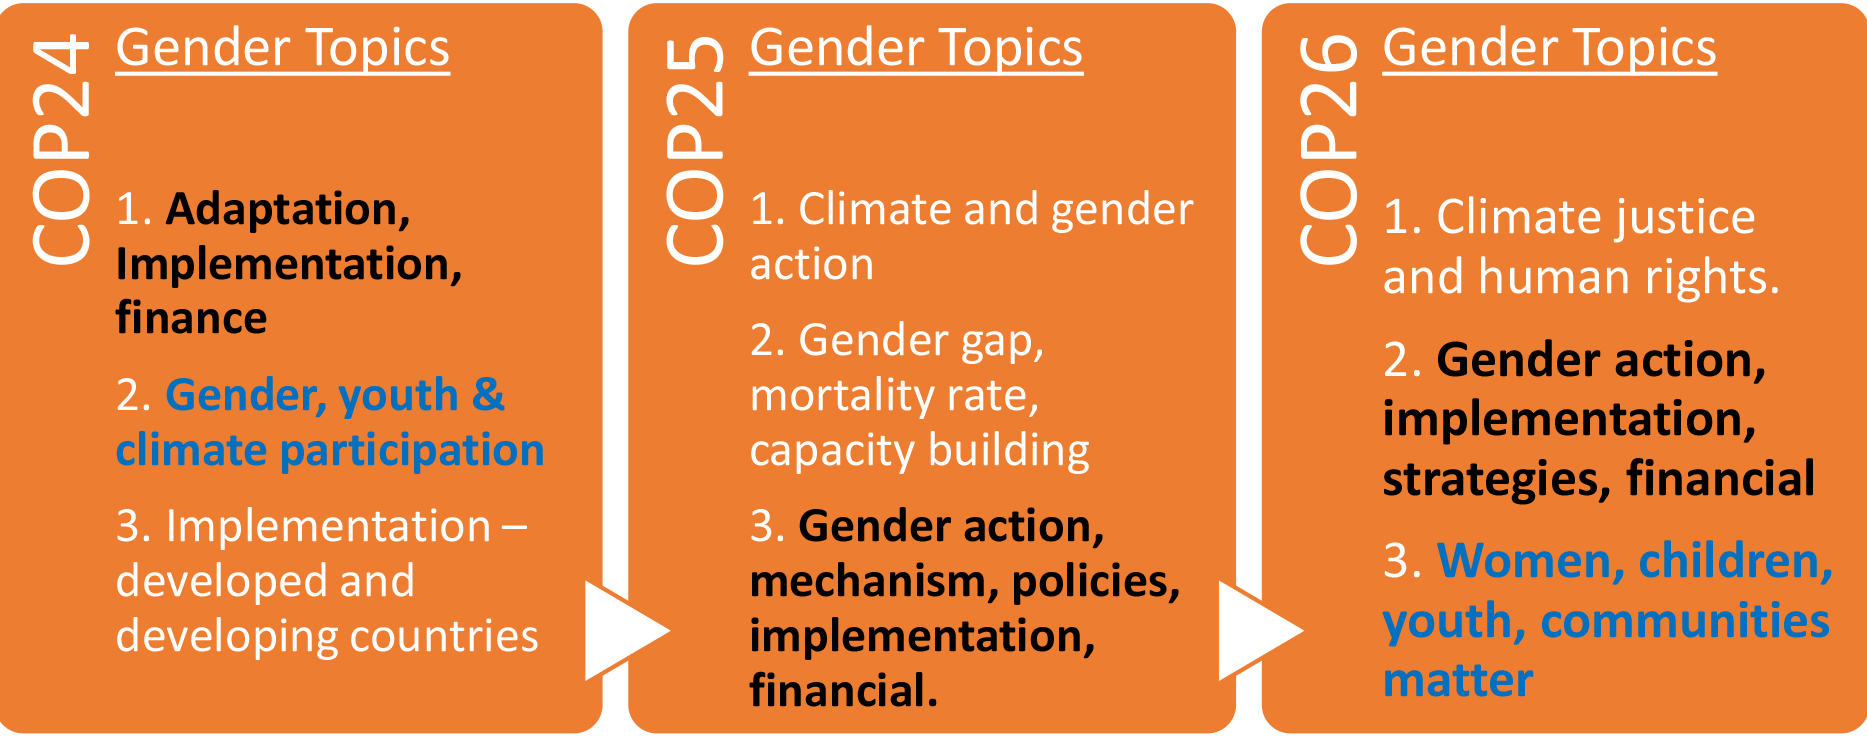 Gender-related topics extracted in COP24, COP25 and COP26 using LDA technique.